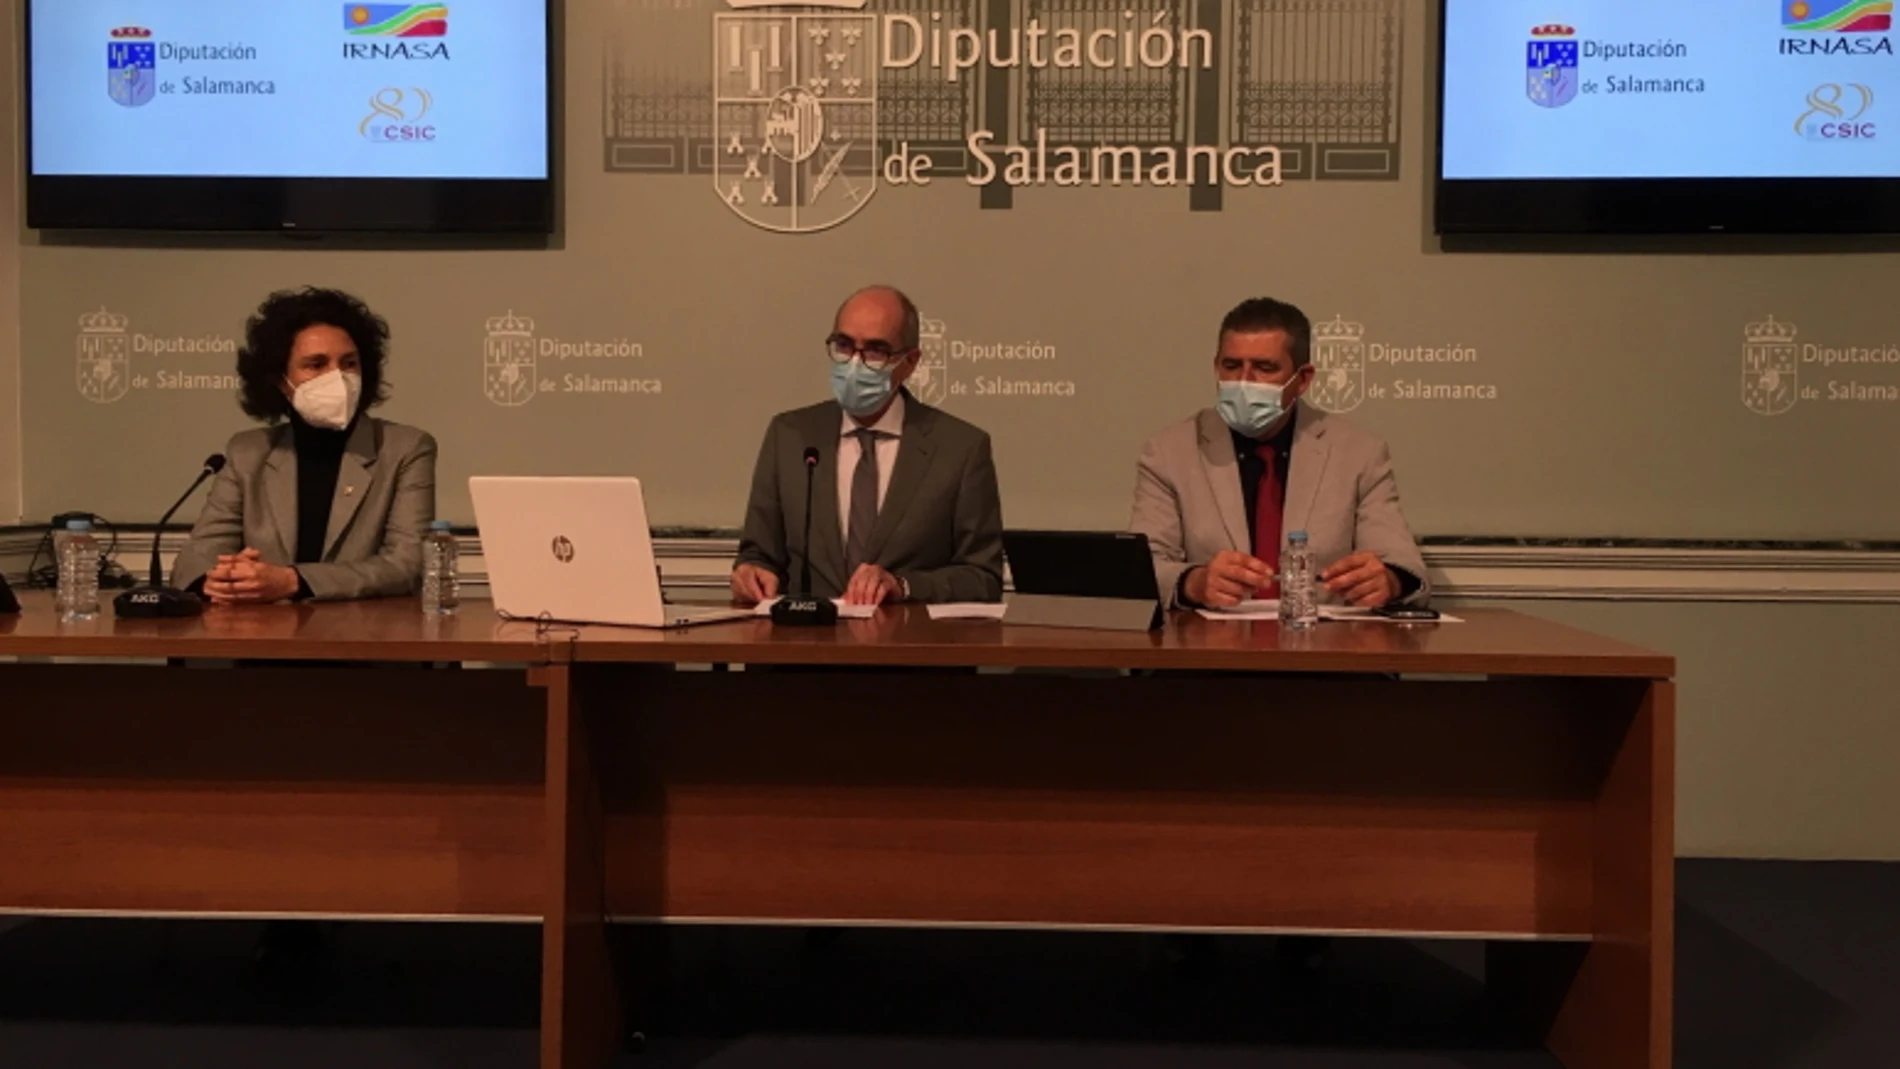 El presidente de la Diputación de Salamanca, Javier Iglesias firma el acuerdo con Irnasa para impulsar la colaboración entre las fincas Castro Enríquez y Muñovela en investigación